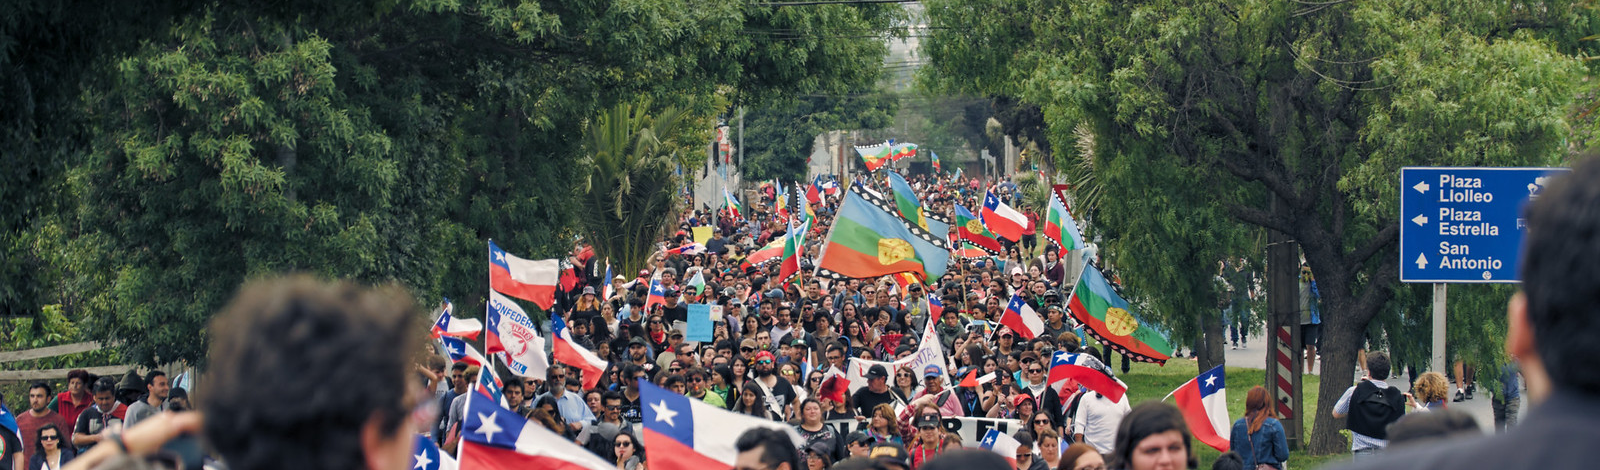 4 anos após estallido, Chile segue estagnado pela ausência de uma visão coletiva de país